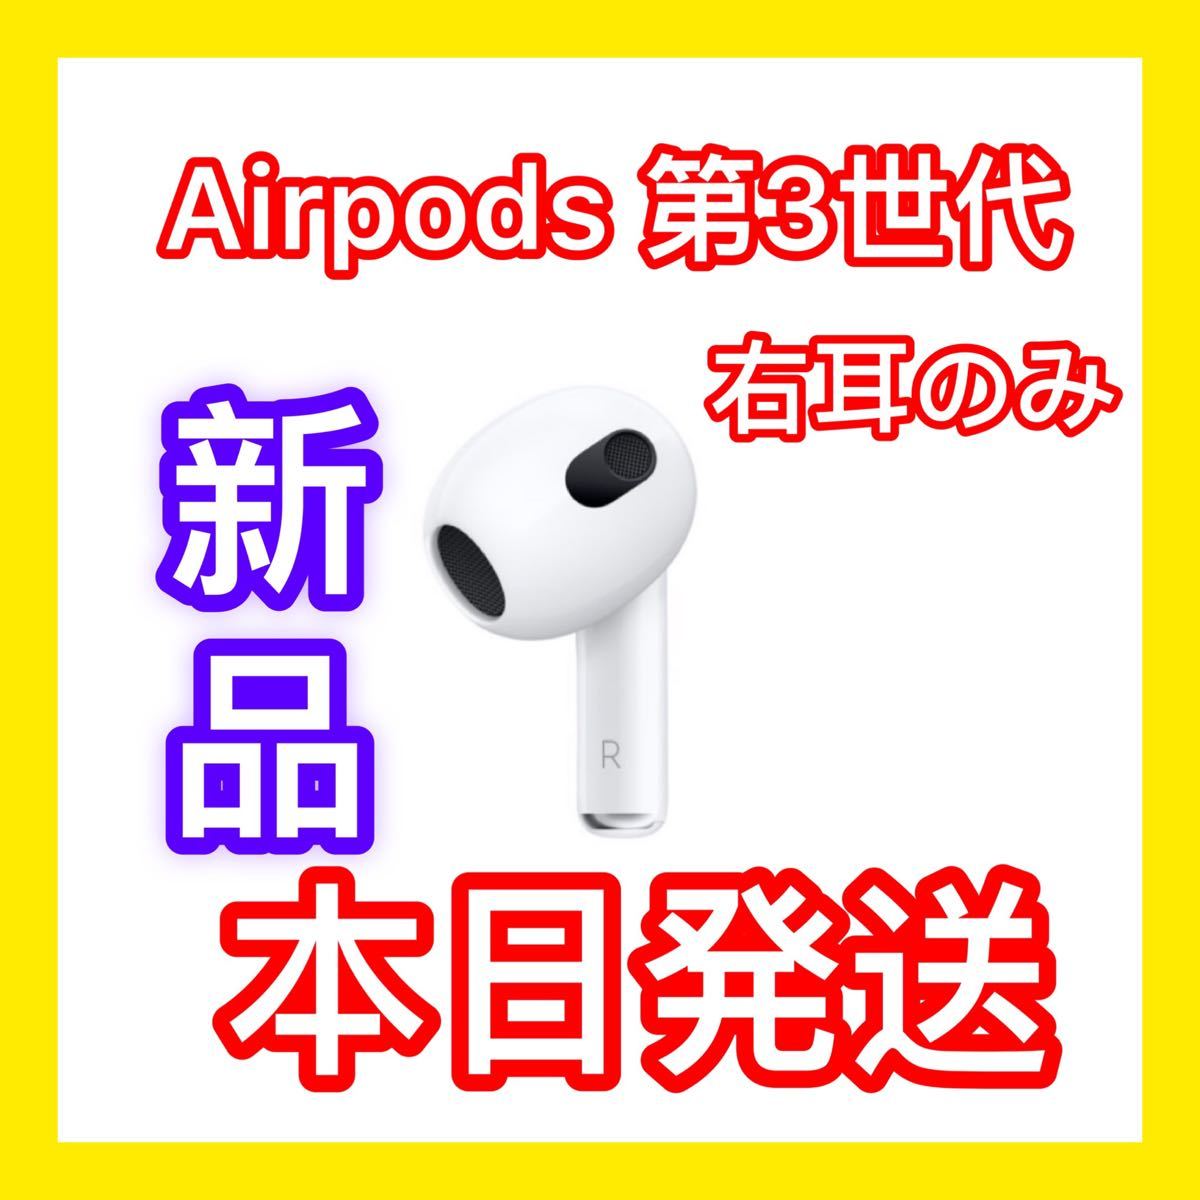 低価格化 エアーポッズ 第３世代 AirPods 左耳のみ Apple国内正規品 新品